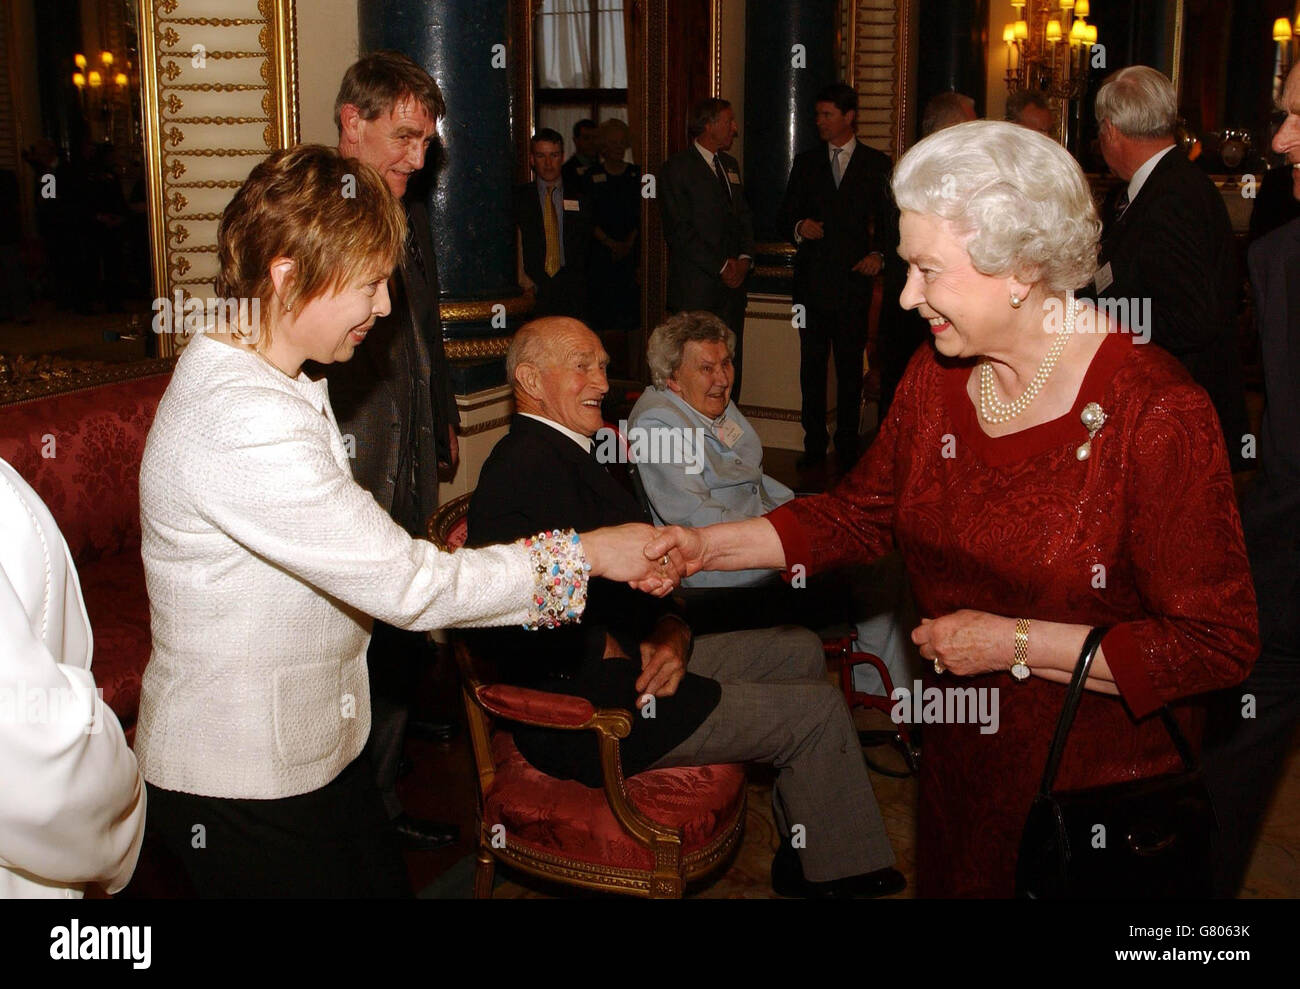 La regina britannica Elizabeth II stringe le mani con Jayne Torvill che, con il partner Christopher Dean, ha vinto Gold per la danza sul ghiaccio alle Olimpiadi invernali 1984 a Sarajevo. Foto Stock